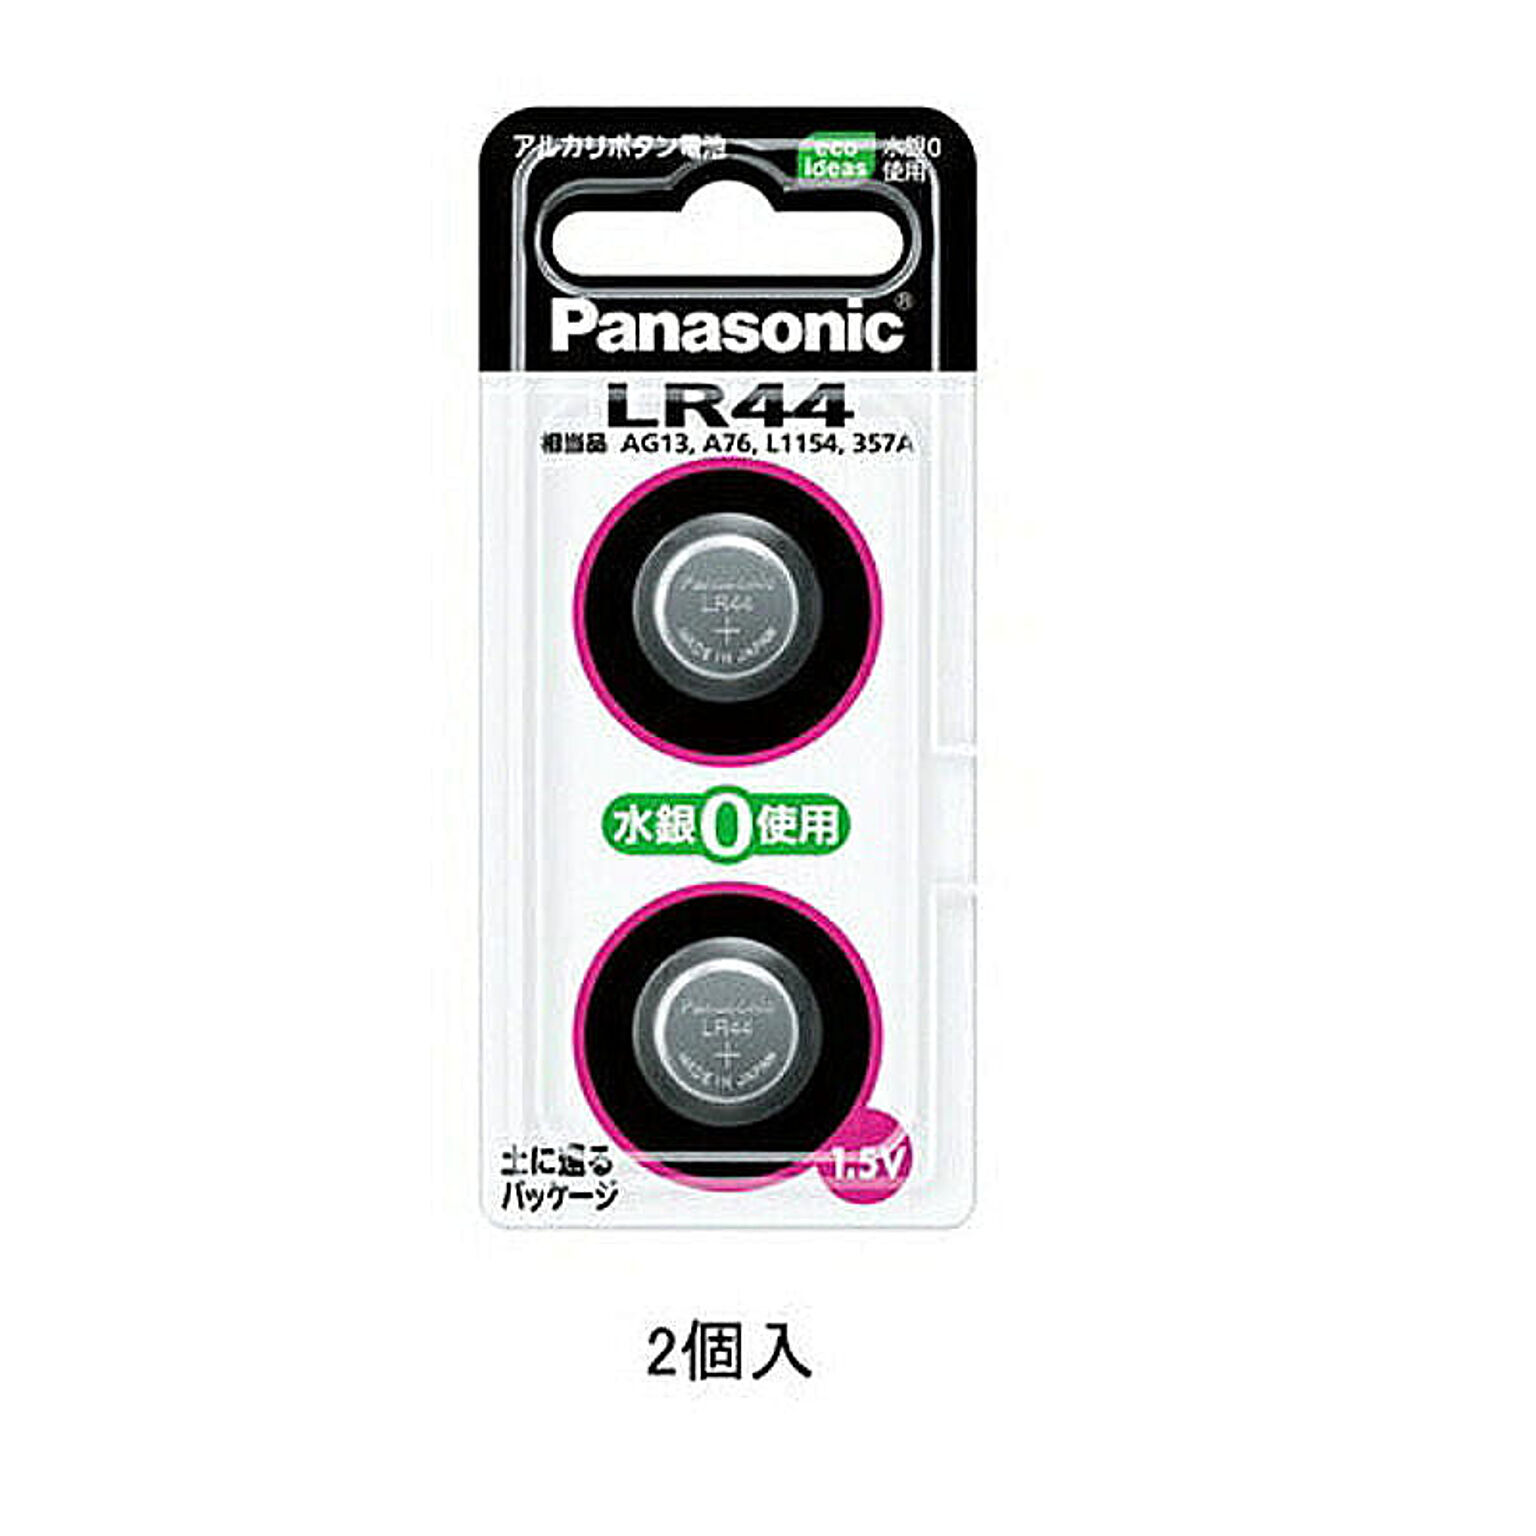 パナソニック Panasonic アルカリボタン電池 コイン電池 1.5V 2個入 LR-44/2P LR44 管理No. 4984824160972